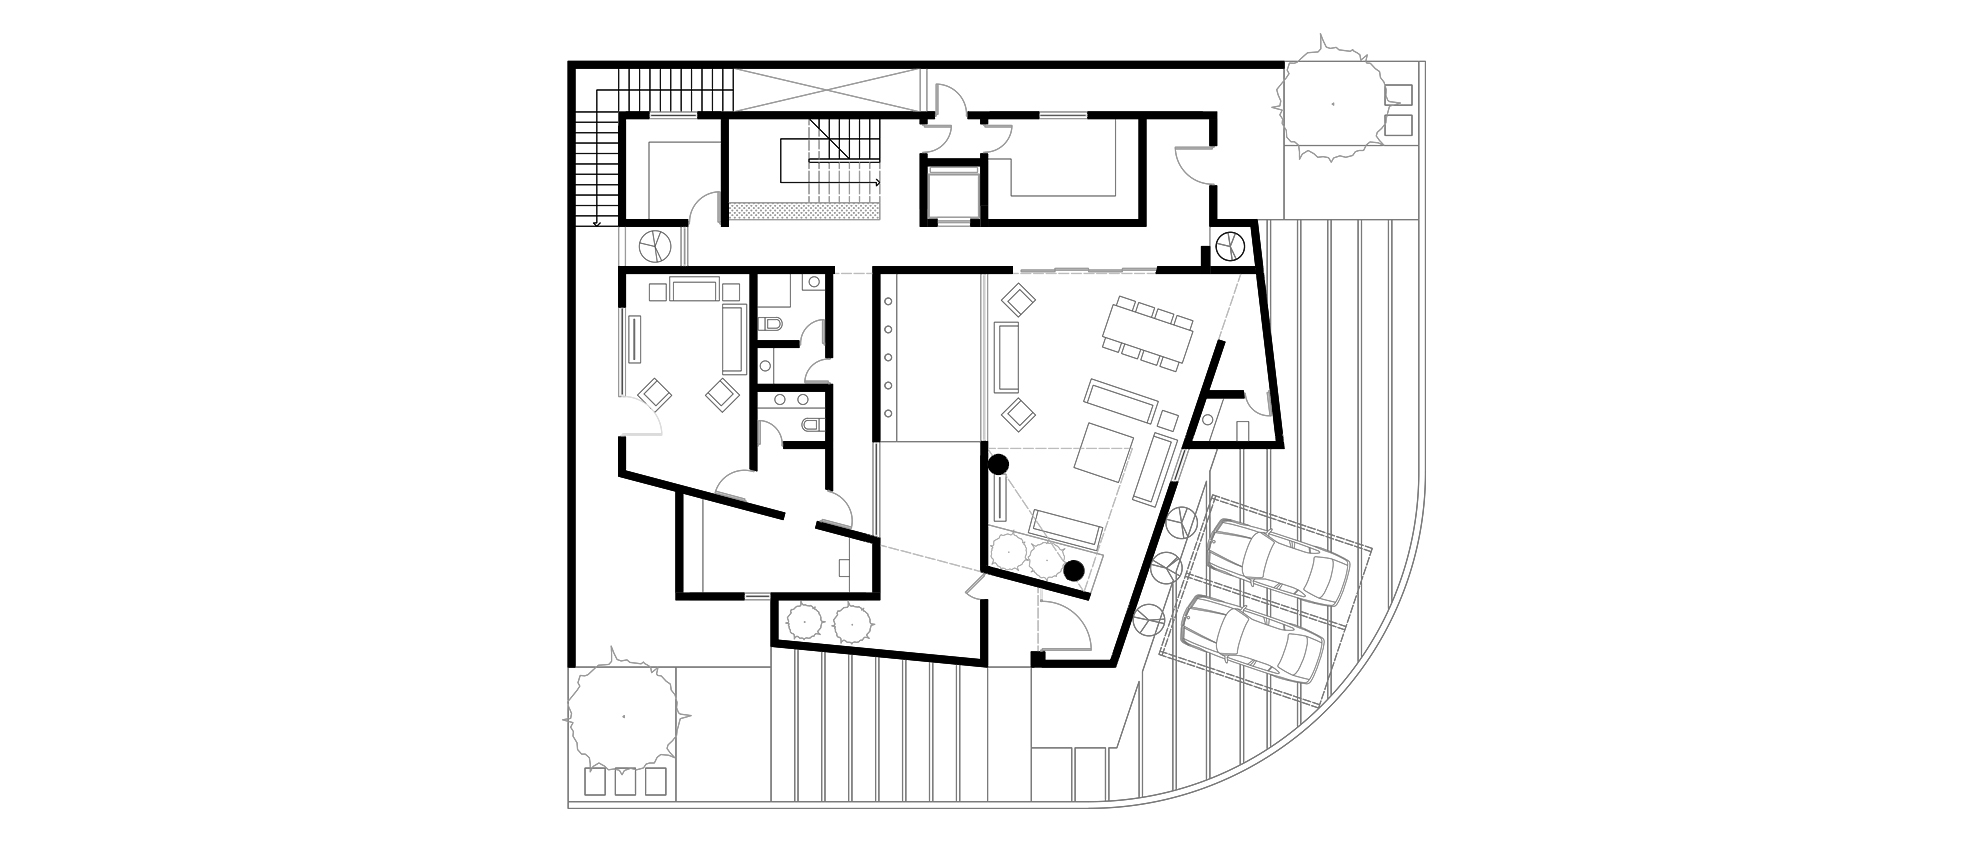 1Ground Floor Plan